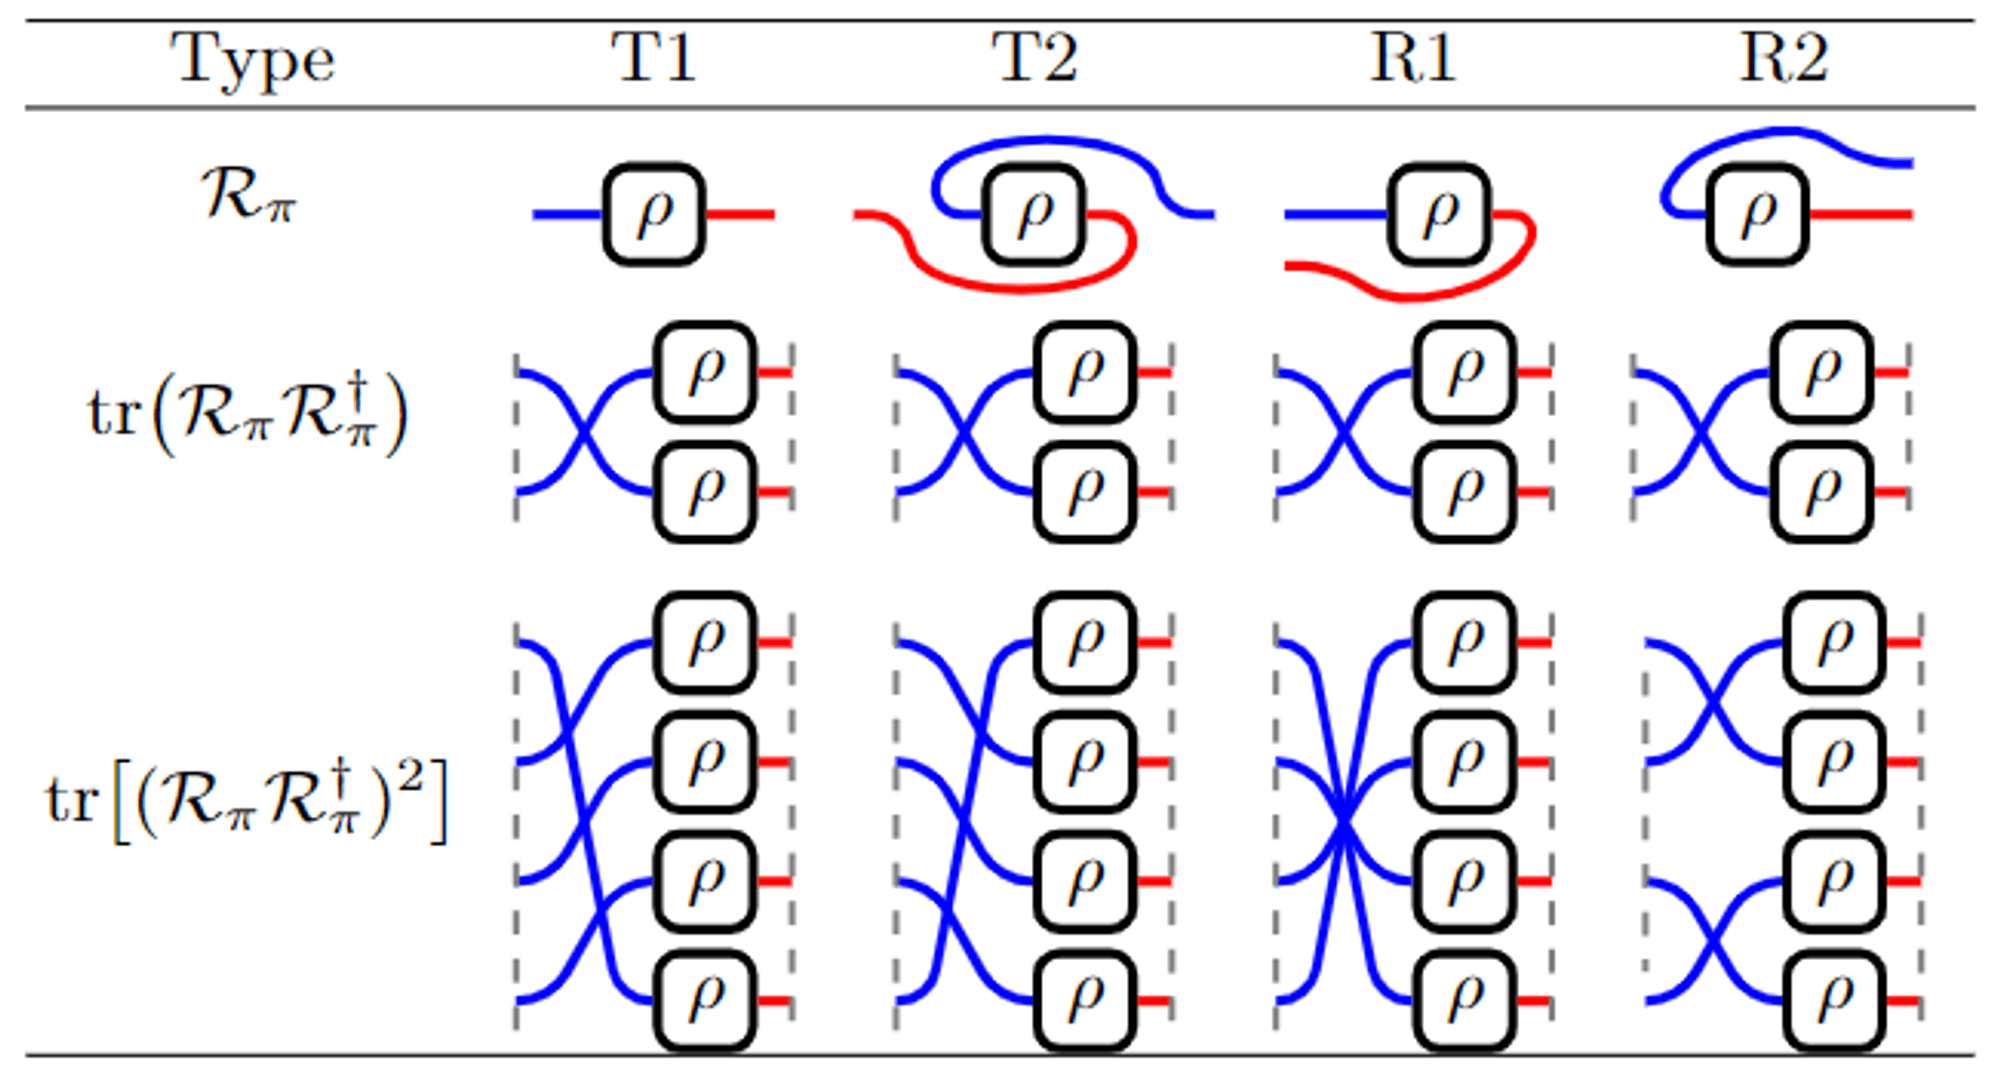 图一：利用张量网络表示，我们表示出了四种不同的子系统以及他们的二阶，四阶矩的缩并规则。图中向左的未闭合线代表行指标，向右的未闭合线代表列指标，虚线代表周期性边界条件。我们发现，对于所有类型的子系统来说，其二阶矩等价于对SWAP的测量。SWAP是一种可观测量，也是一个幺正操作，被图形化表示为两根线的交换。从第三行可以看出，R类型子系统的四阶矩同样等价于多个SWAP算符的联合测量，而T类型子系统的四阶矩则等价于一个四阶顺序轮换或逆序轮换算符的测量。轮换算符被图形化表示为顺序或逆序交换四条未闭合线，它并不是一个可观测量，而是幺正算符。